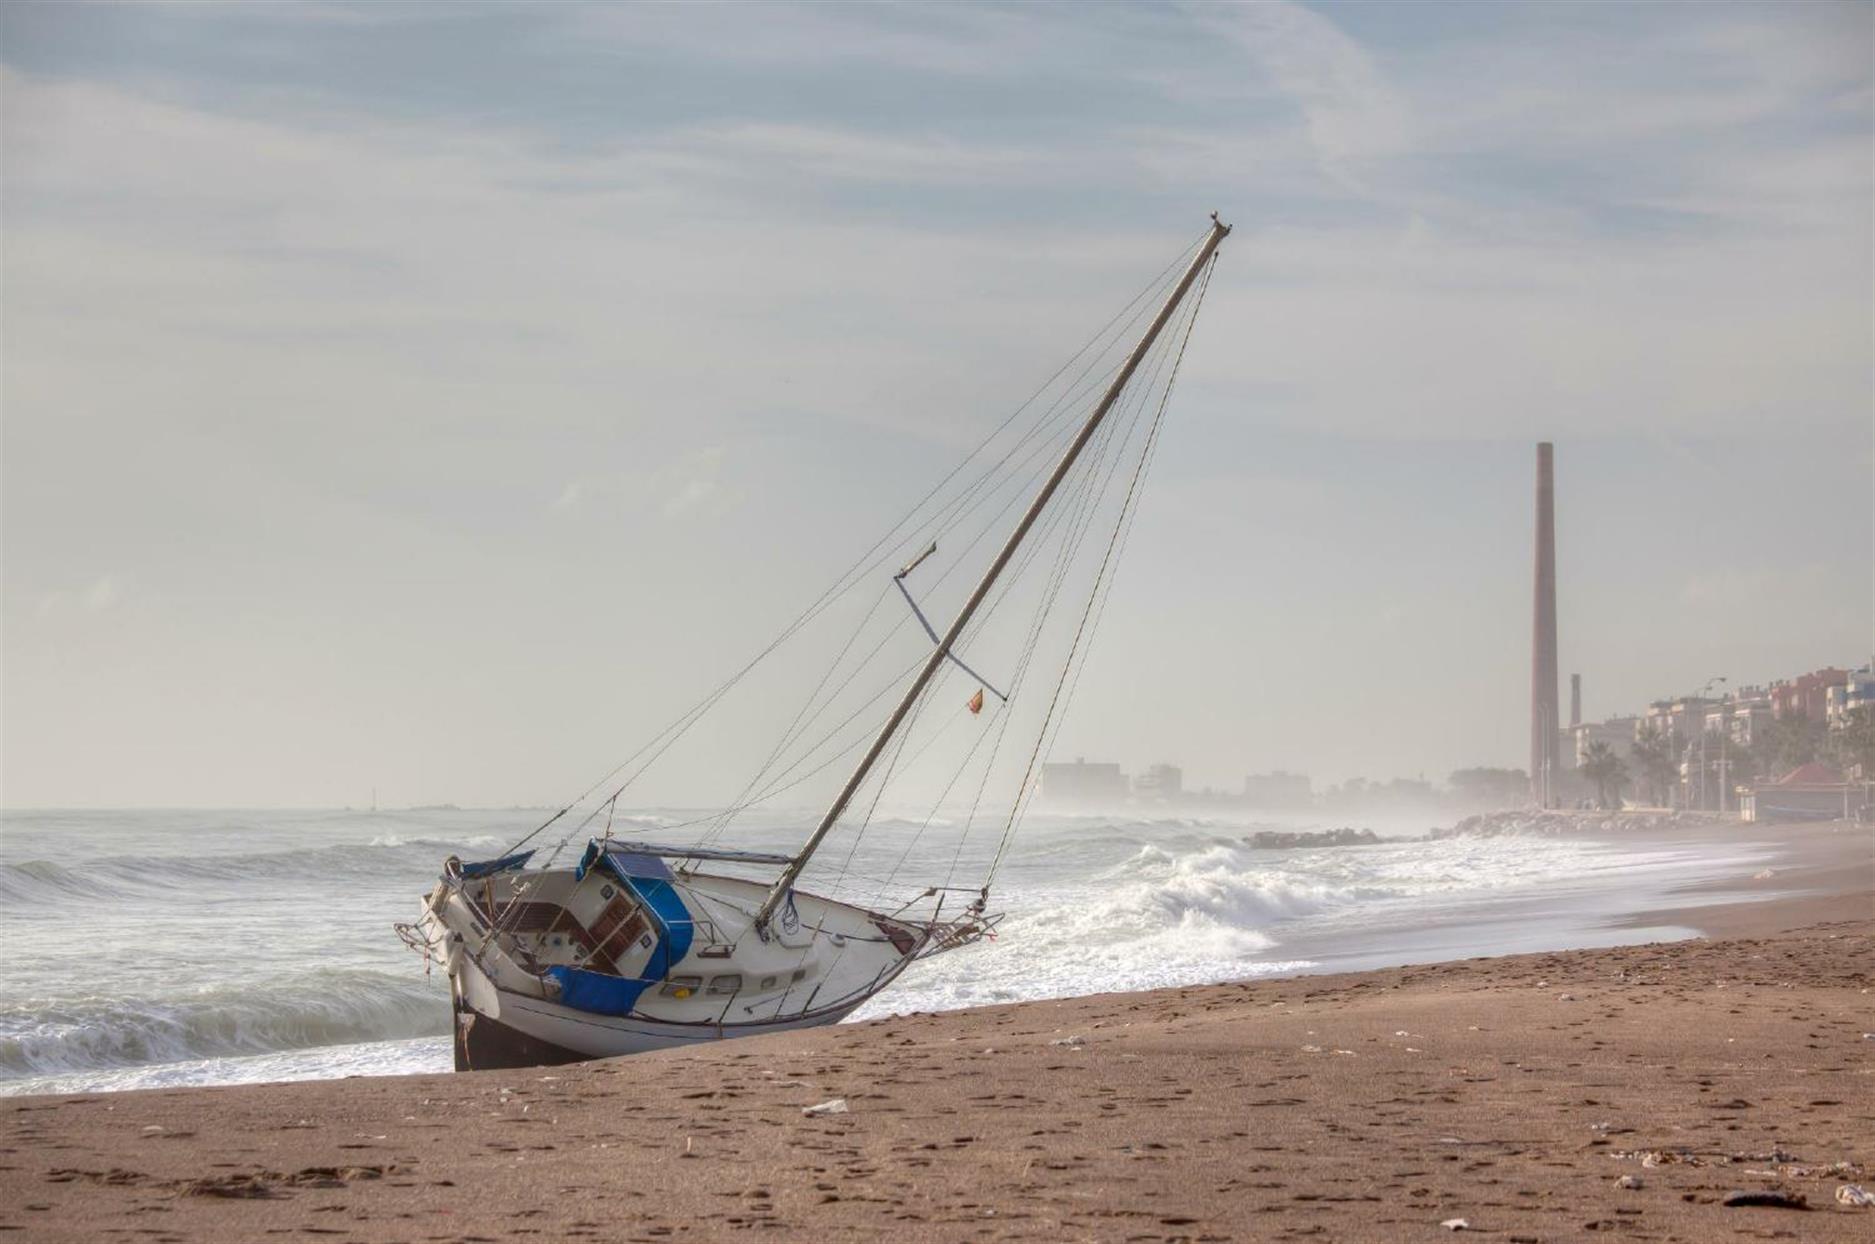 Ein kleines Segelboot strandete im osten von Malage bei einem Sturm.